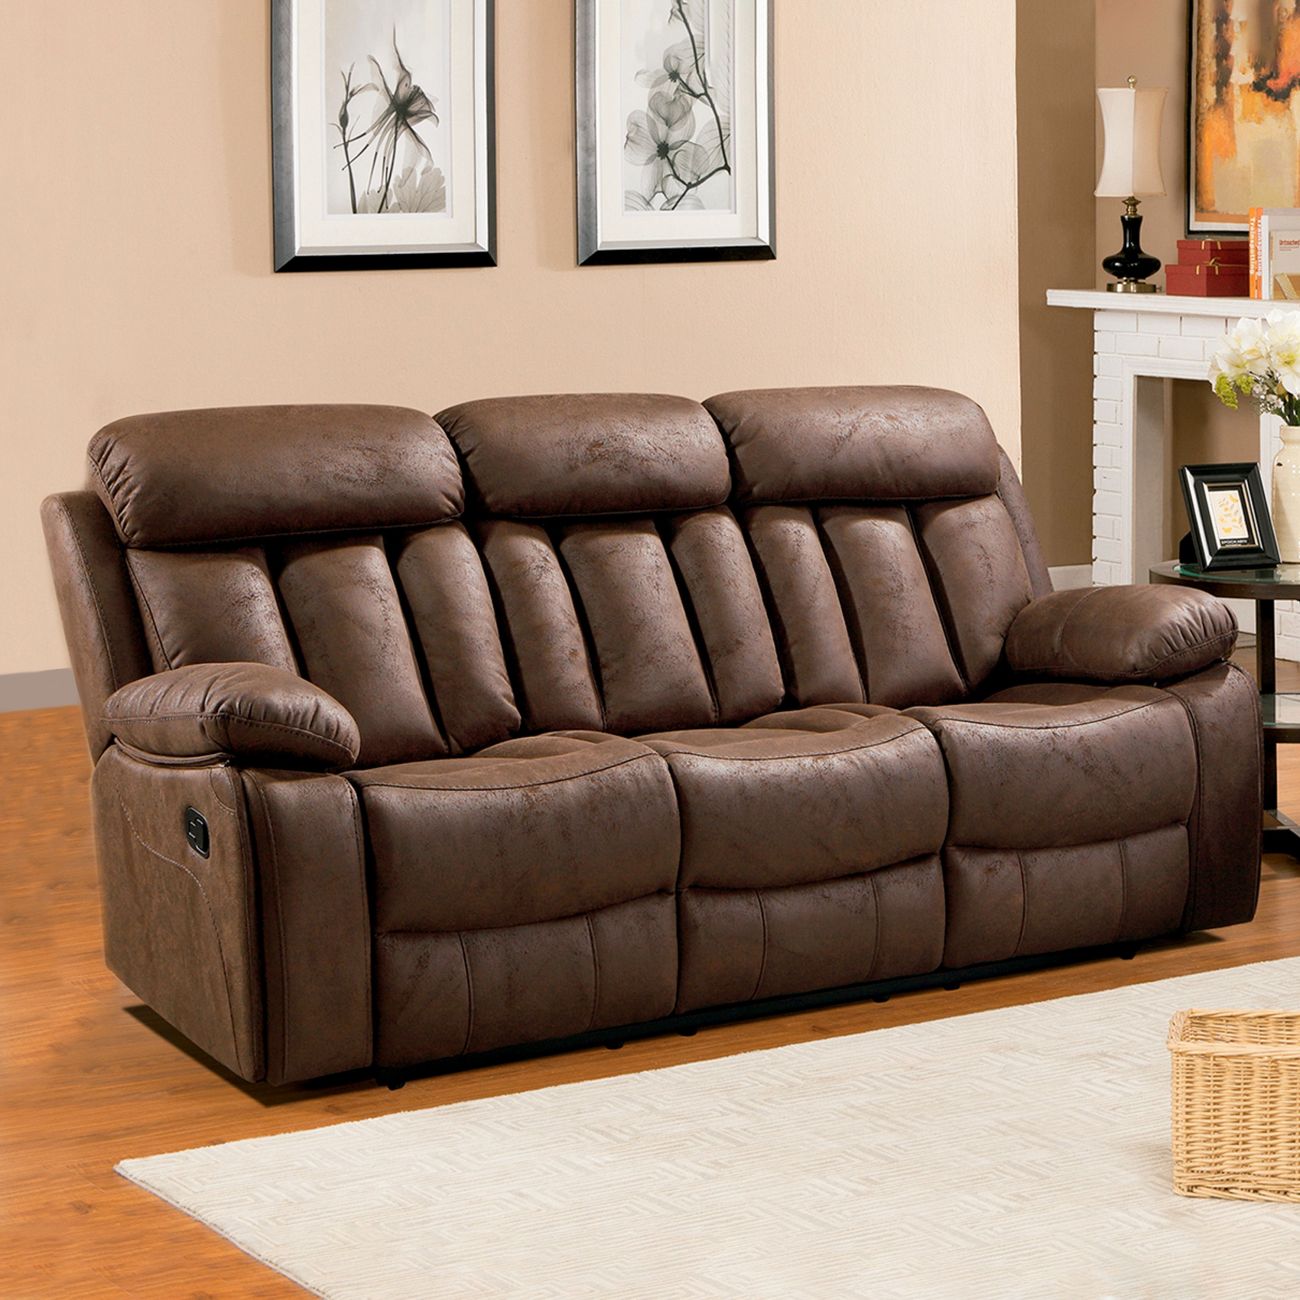 Sofa Cama con Almacenaje CUADROS Tapizado en color Choco